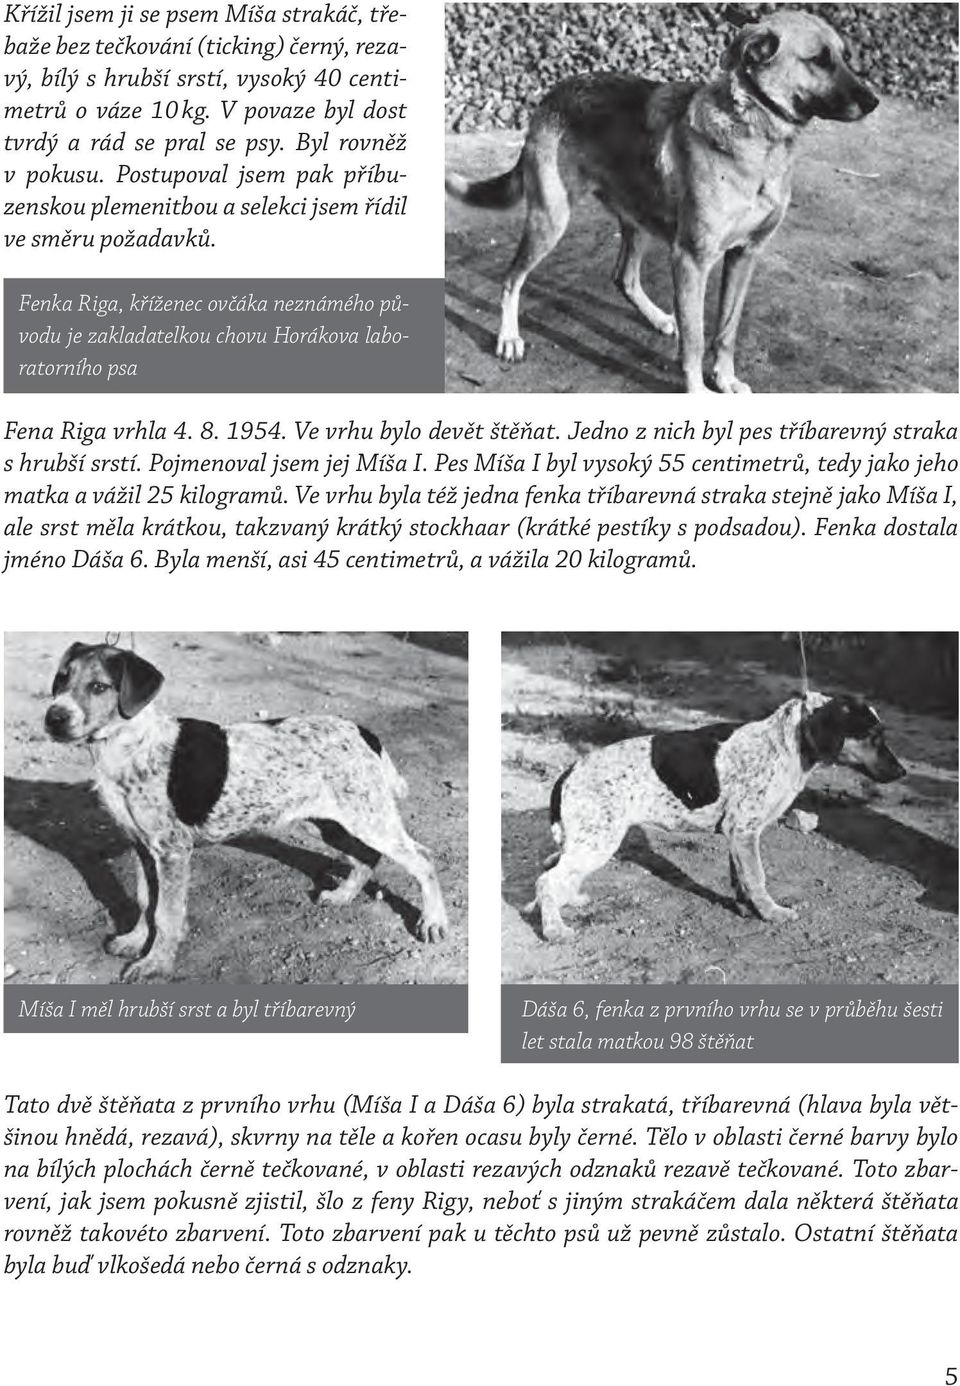 Fenka Riga, kříženec ovčáka neznámého původu je zakladatelkou chovu Horákova laboratorního psa Fena Riga vrhla 4. 8. 1954. Ve vrhu bylo devět štěňat.